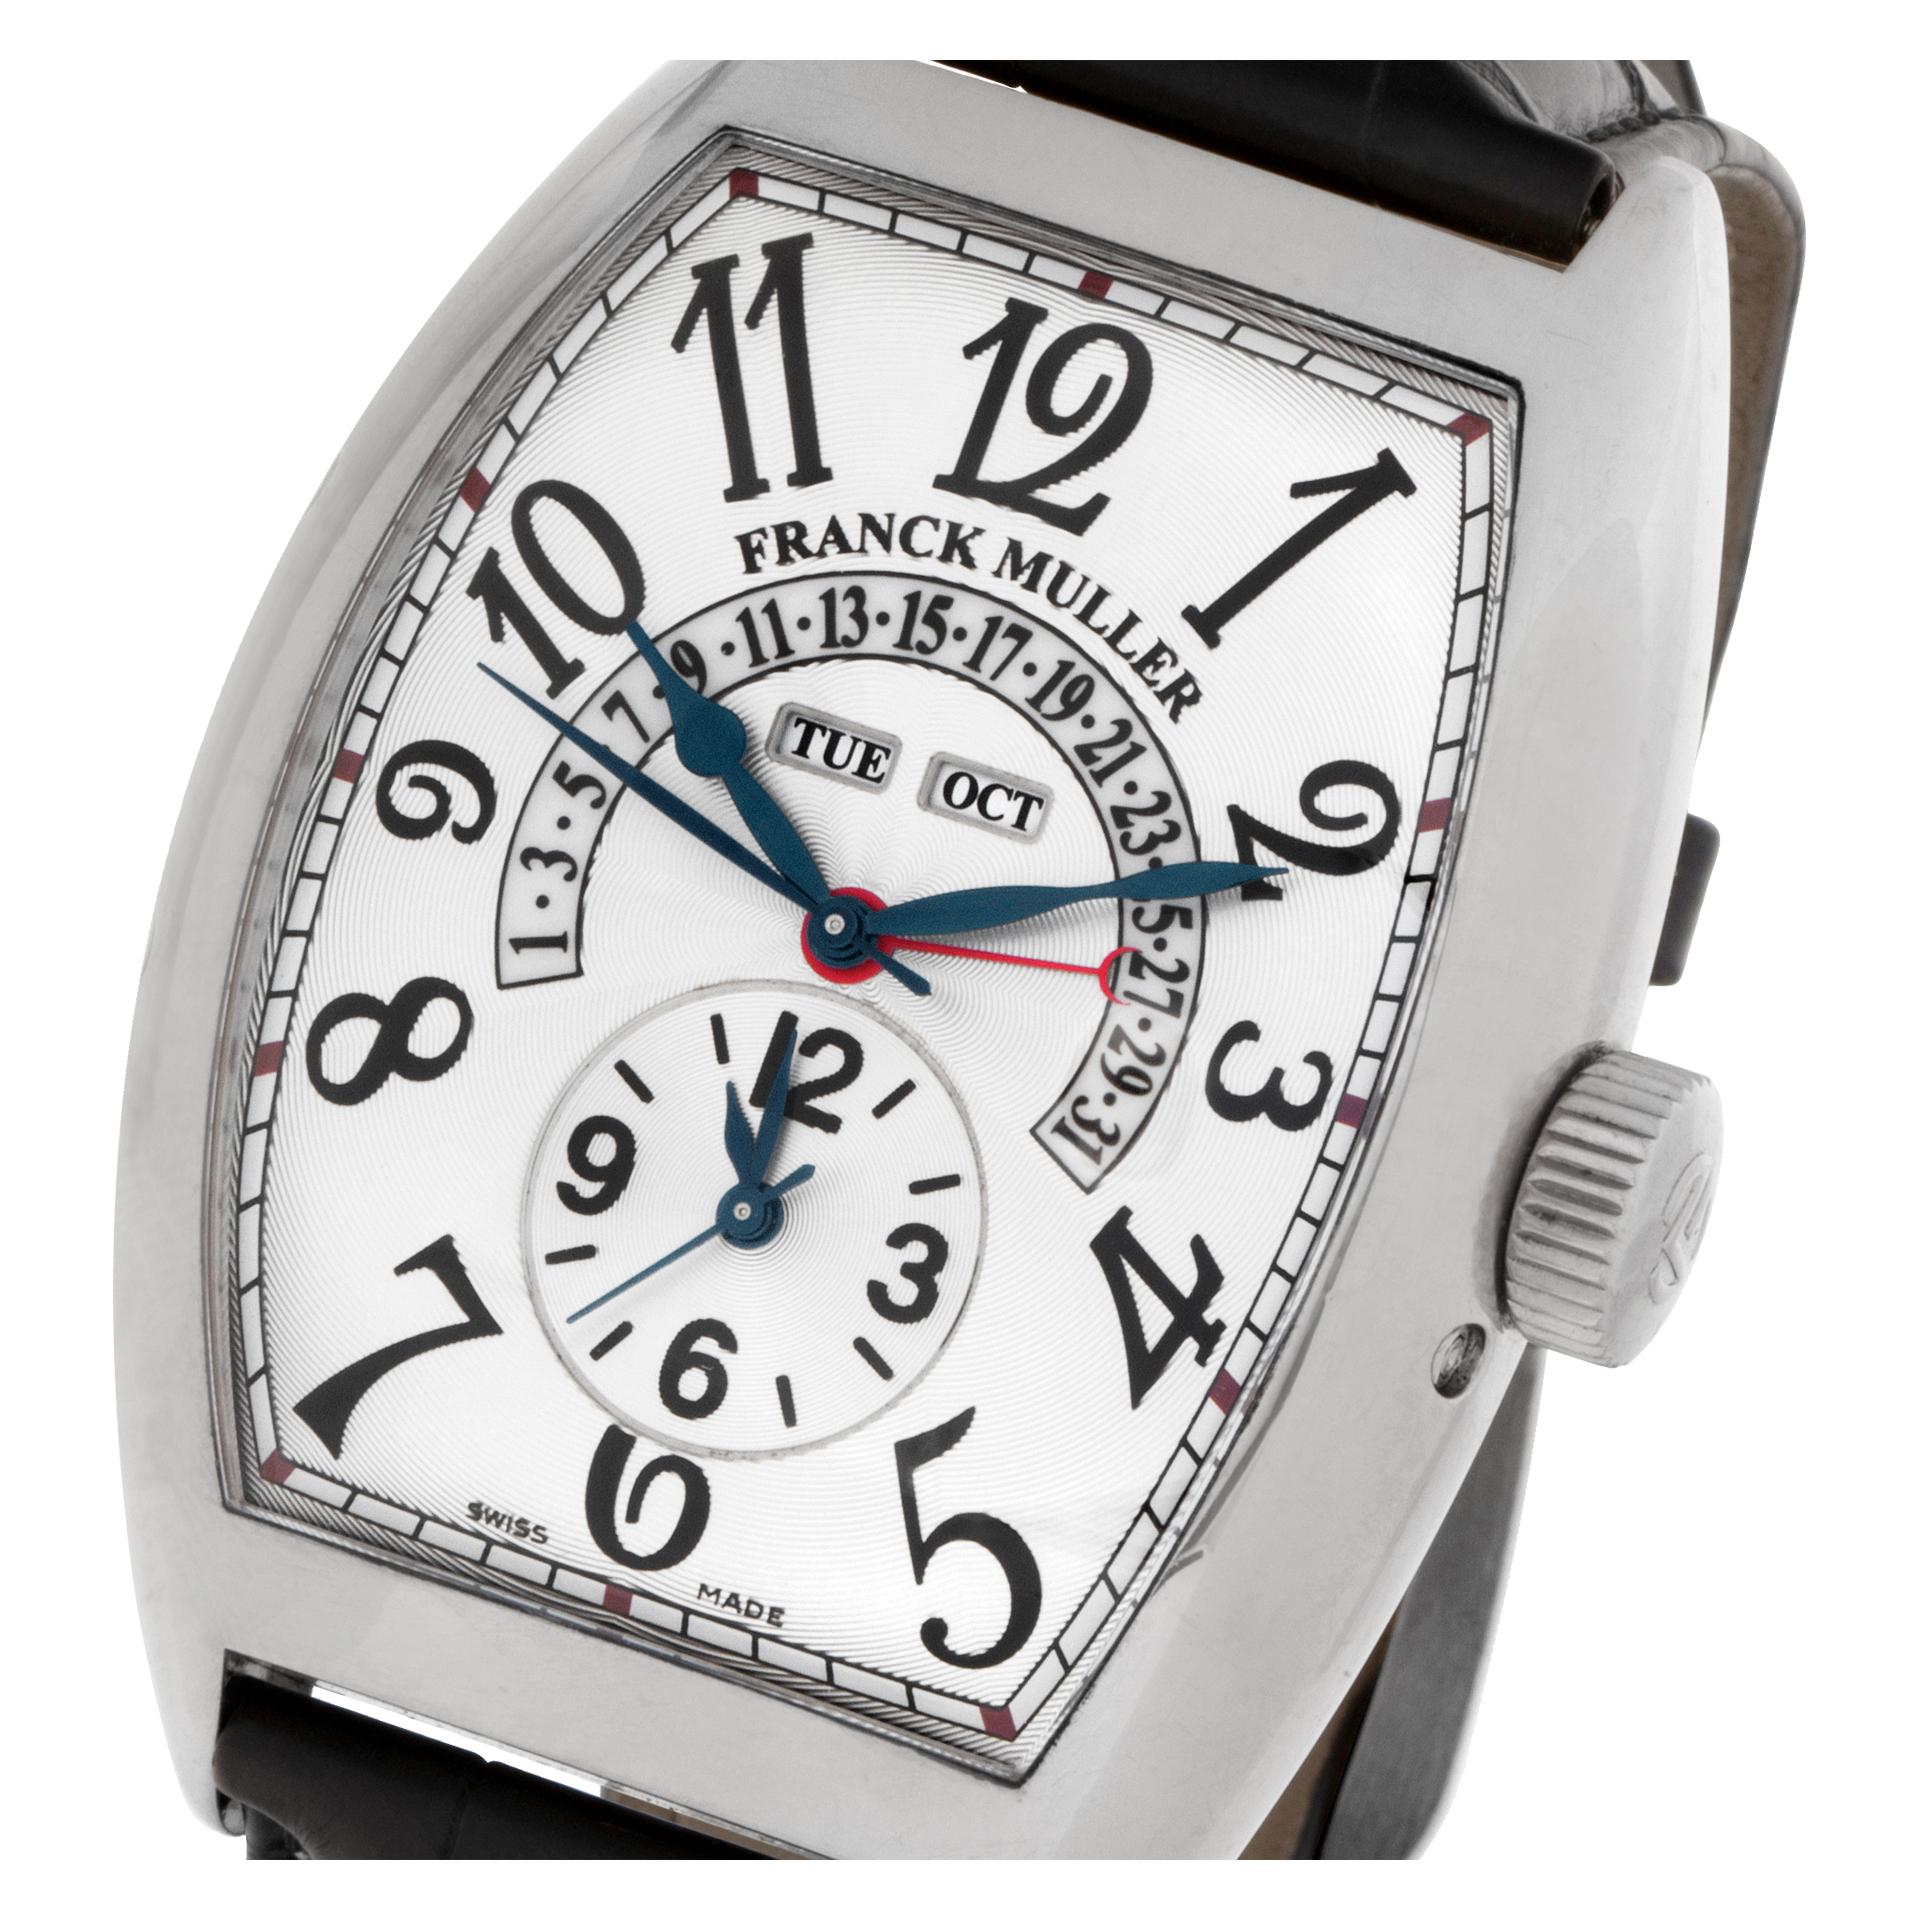 Men's Franck Muller Master Calendar Ref. 9880 Mc Mb in 18k White Gold Watch